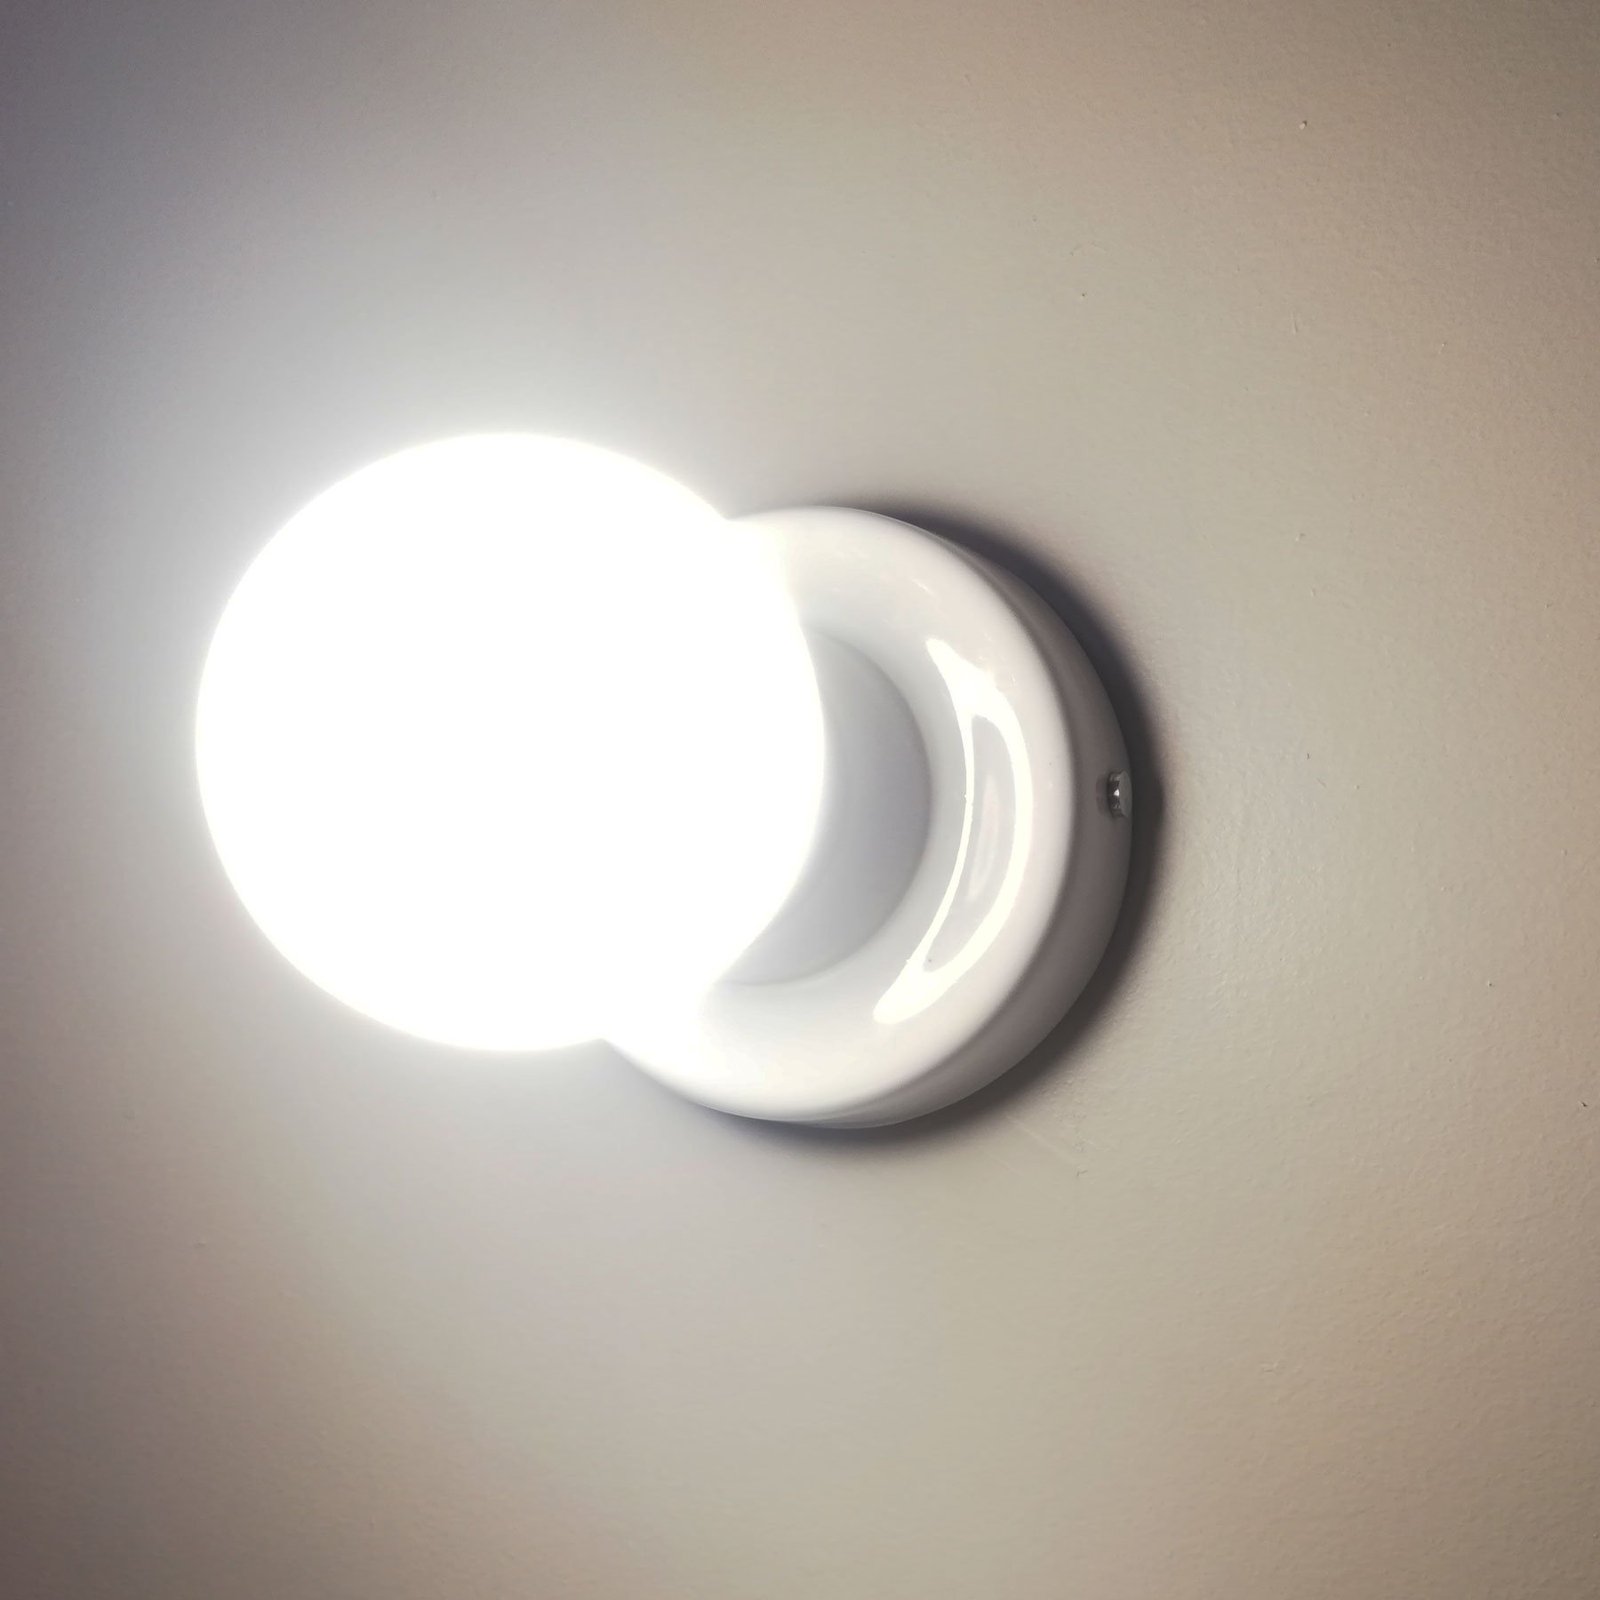 lampara aplique pared diseño ceramica blanca globo led iluminacion buenos aires argentina